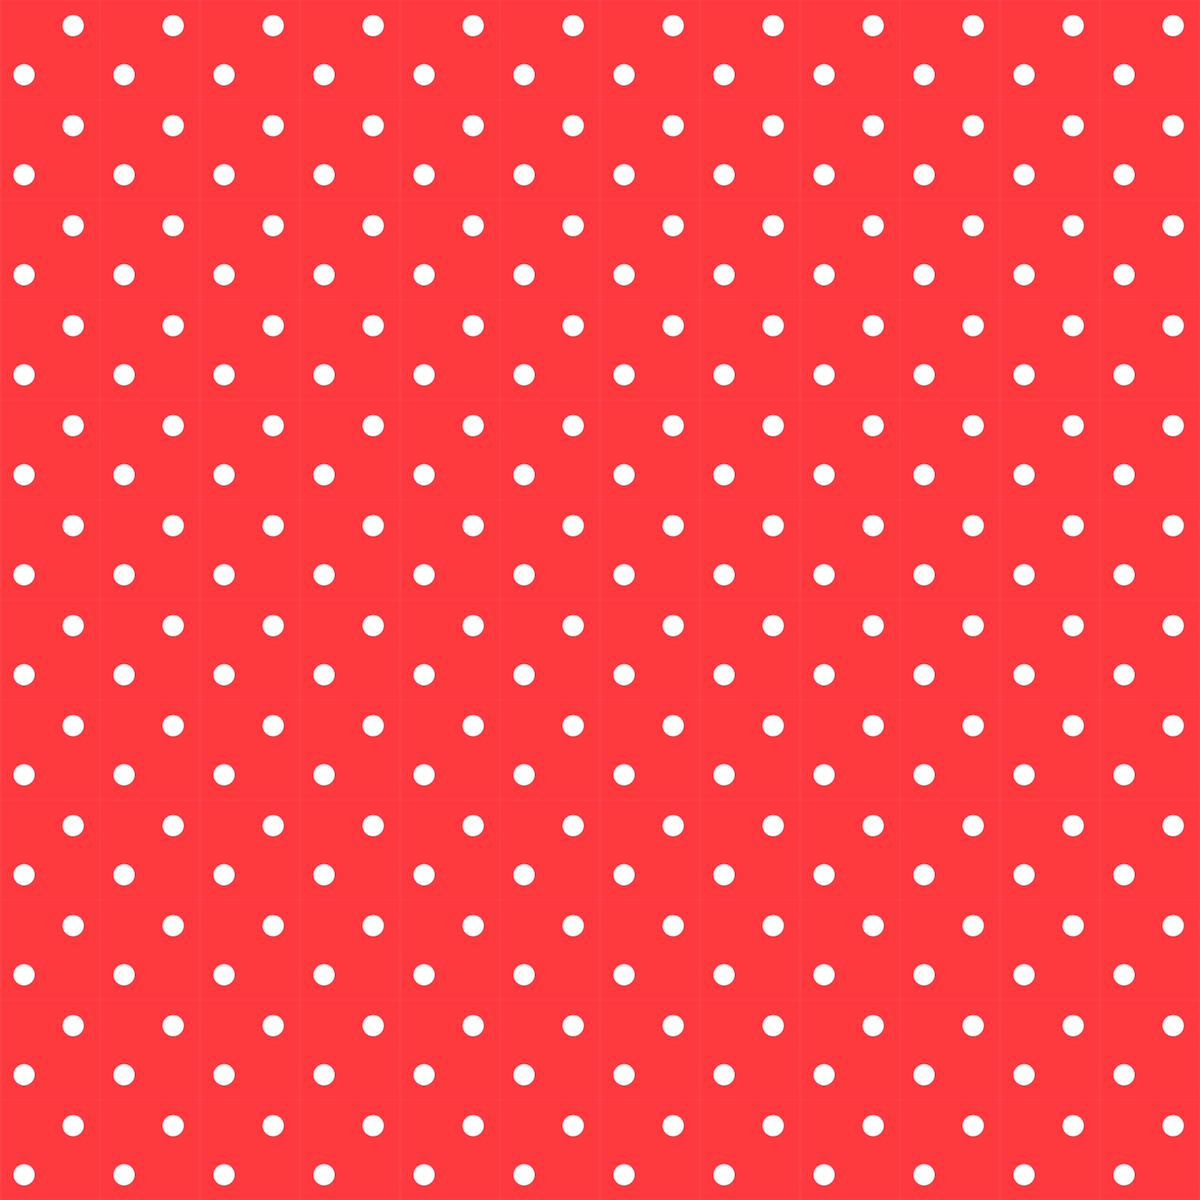 Red And Black Polka Dot Border Clipart Free Polka Dot Scrapbooking